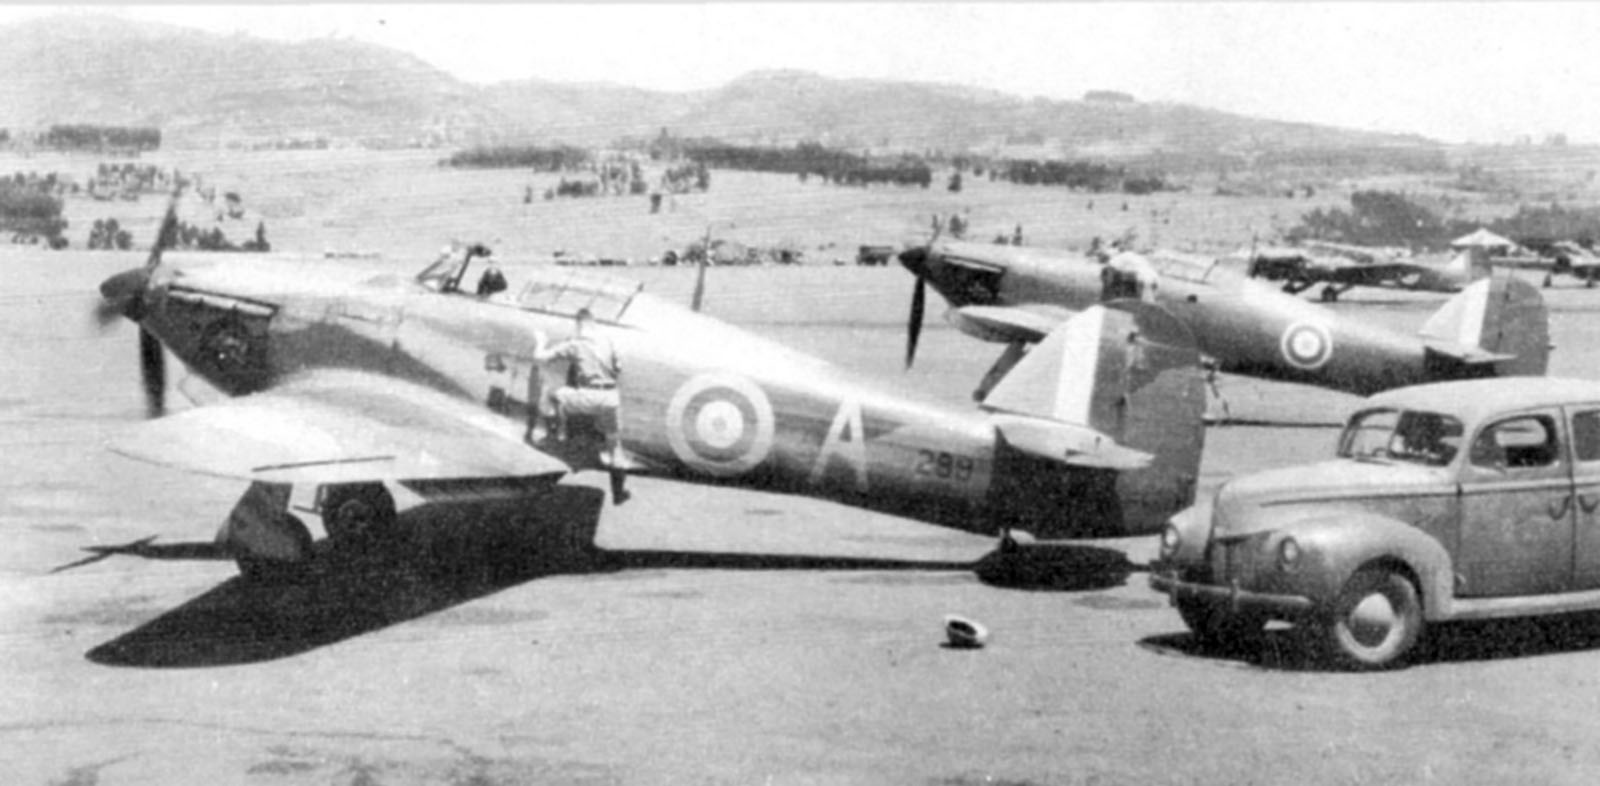 Hawker-Hurricane-MkI-Trop-SAAF-3Sqn-A-289-Addis-Ababa-Ethiopia-East-Africa-March-1941-01.jpg  by Tony